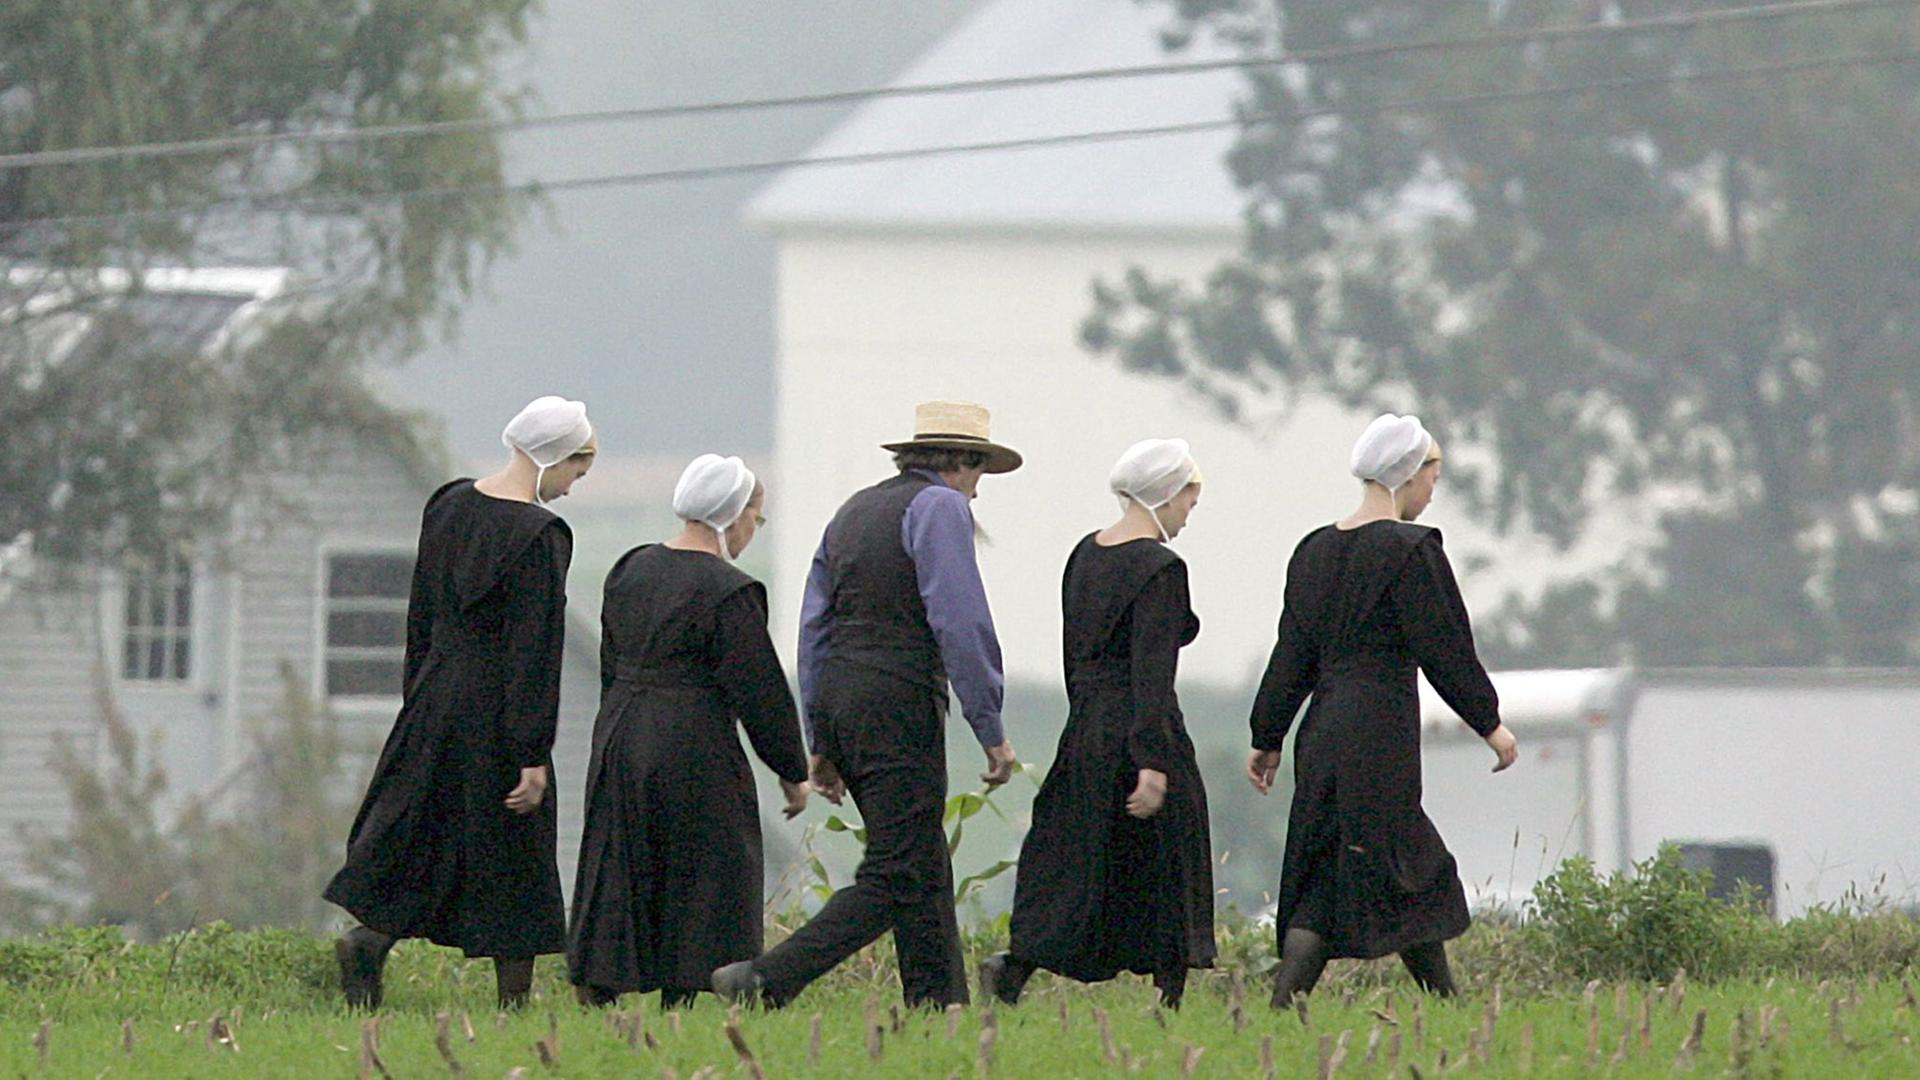 Mitglieder einer Amish-Gemeinde gehen am 4.10.2006 über eine Wiese in Nickel Mines, Pennsylvania.